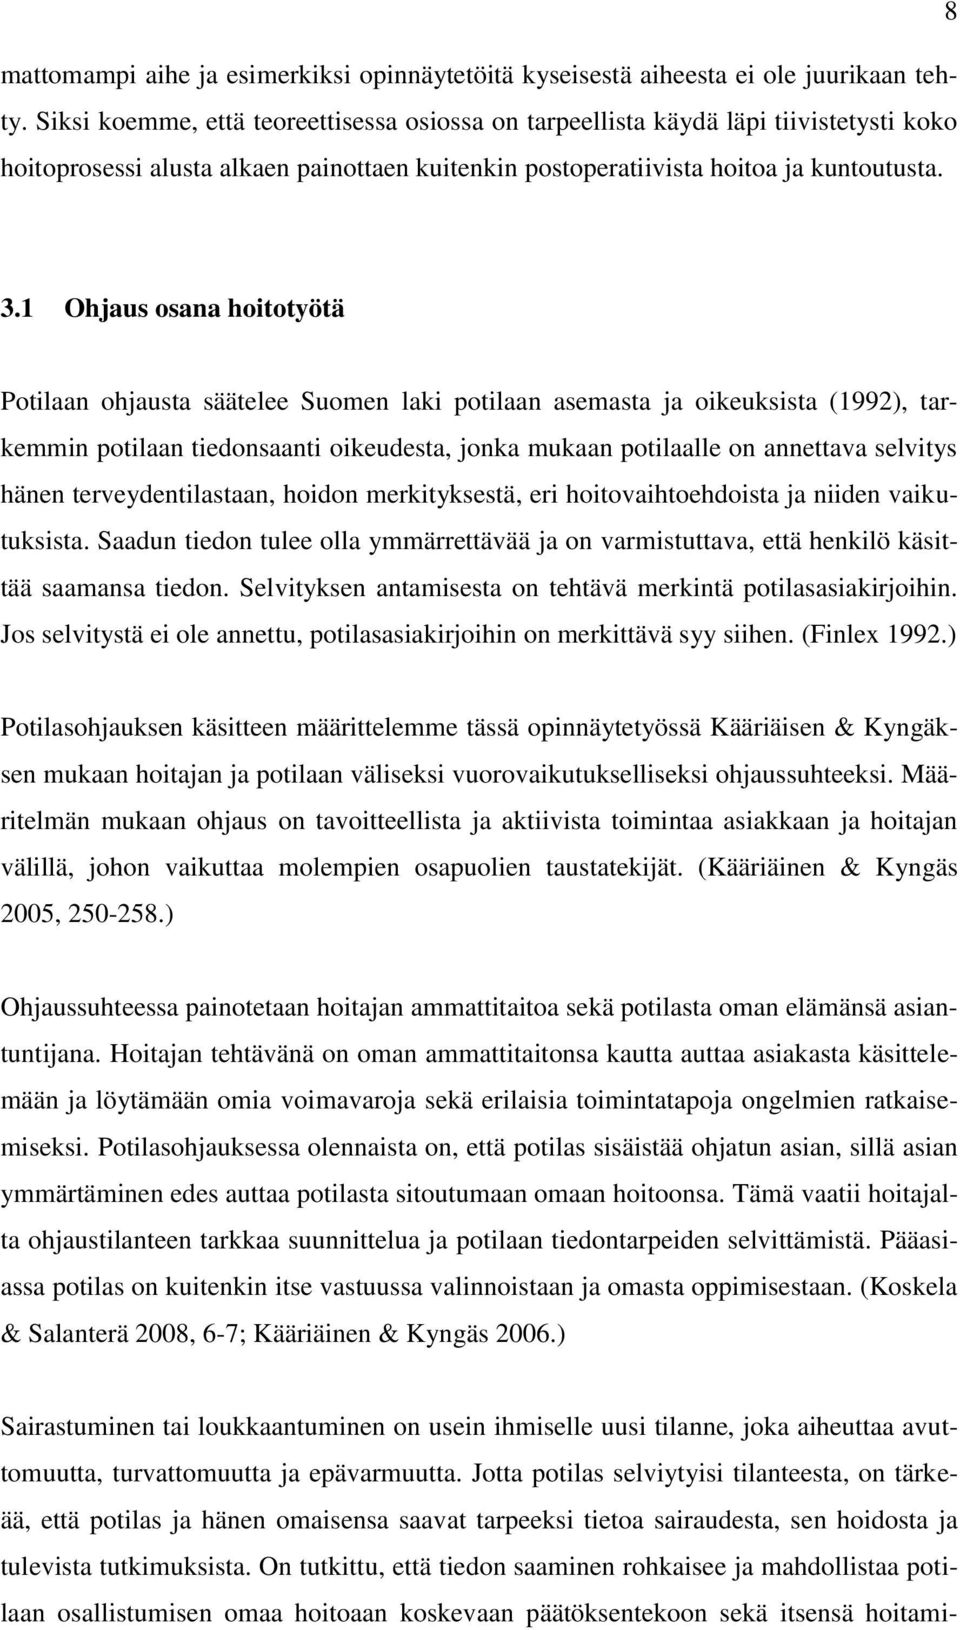 1 Ohjaus osana hoitotyötä Potilaan ohjausta säätelee Suomen laki potilaan asemasta ja oikeuksista (1992), tarkemmin potilaan tiedonsaanti oikeudesta, jonka mukaan potilaalle on annettava selvitys